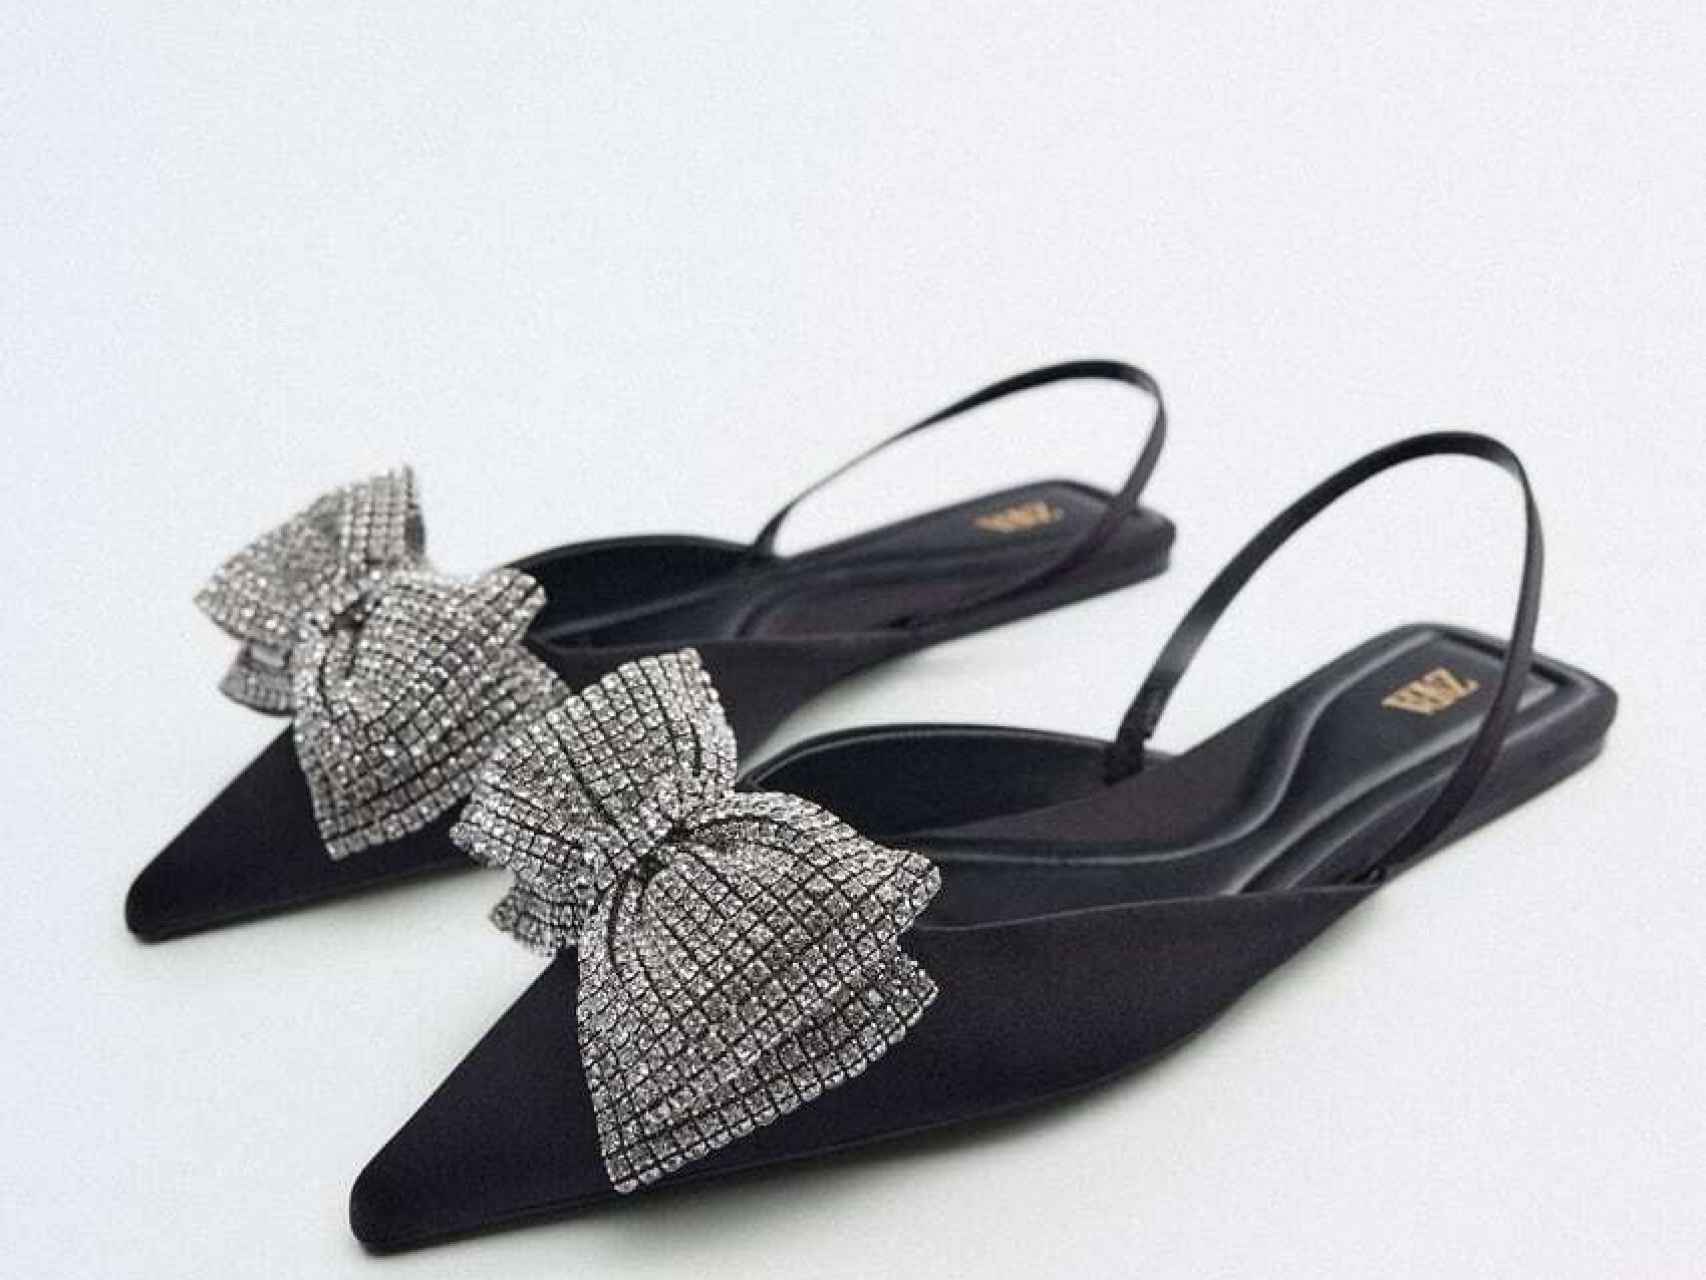 Zapato plano en color negro y lazado brillante, de Zara.